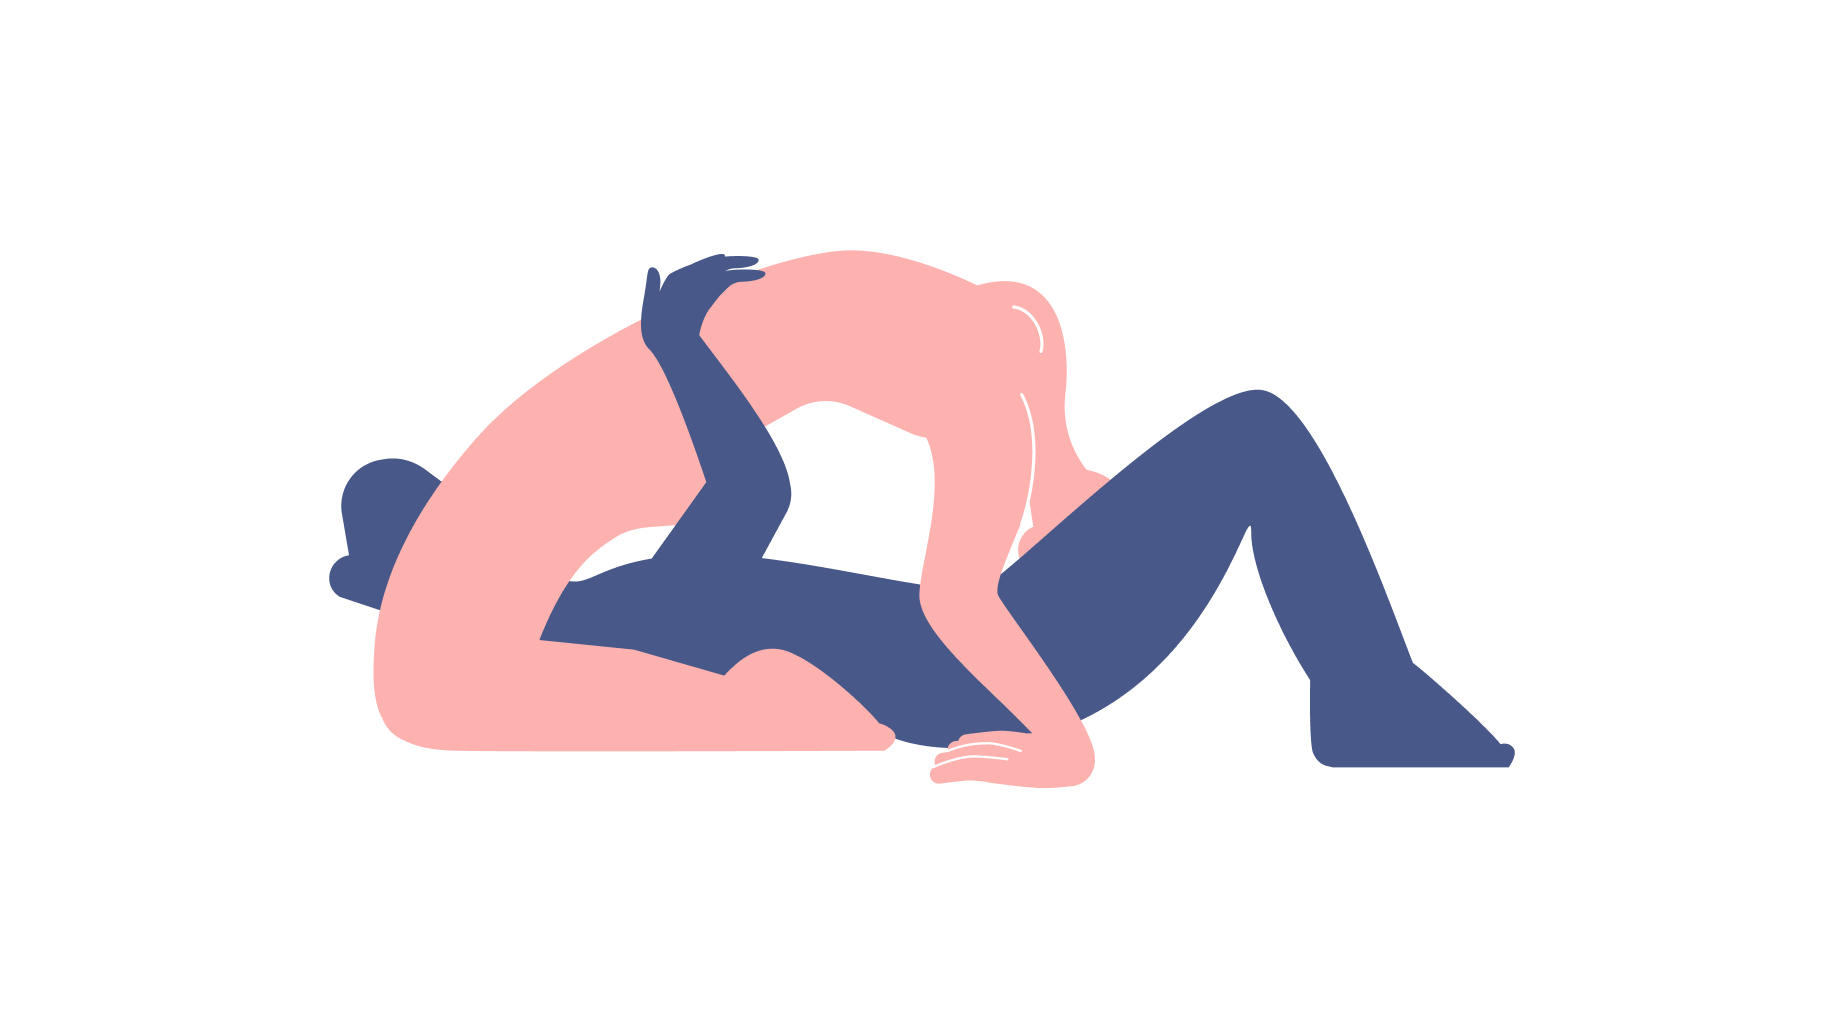 Сложные Необычные позы для секса - позиций (Фото Видео Картинки). Камасутра